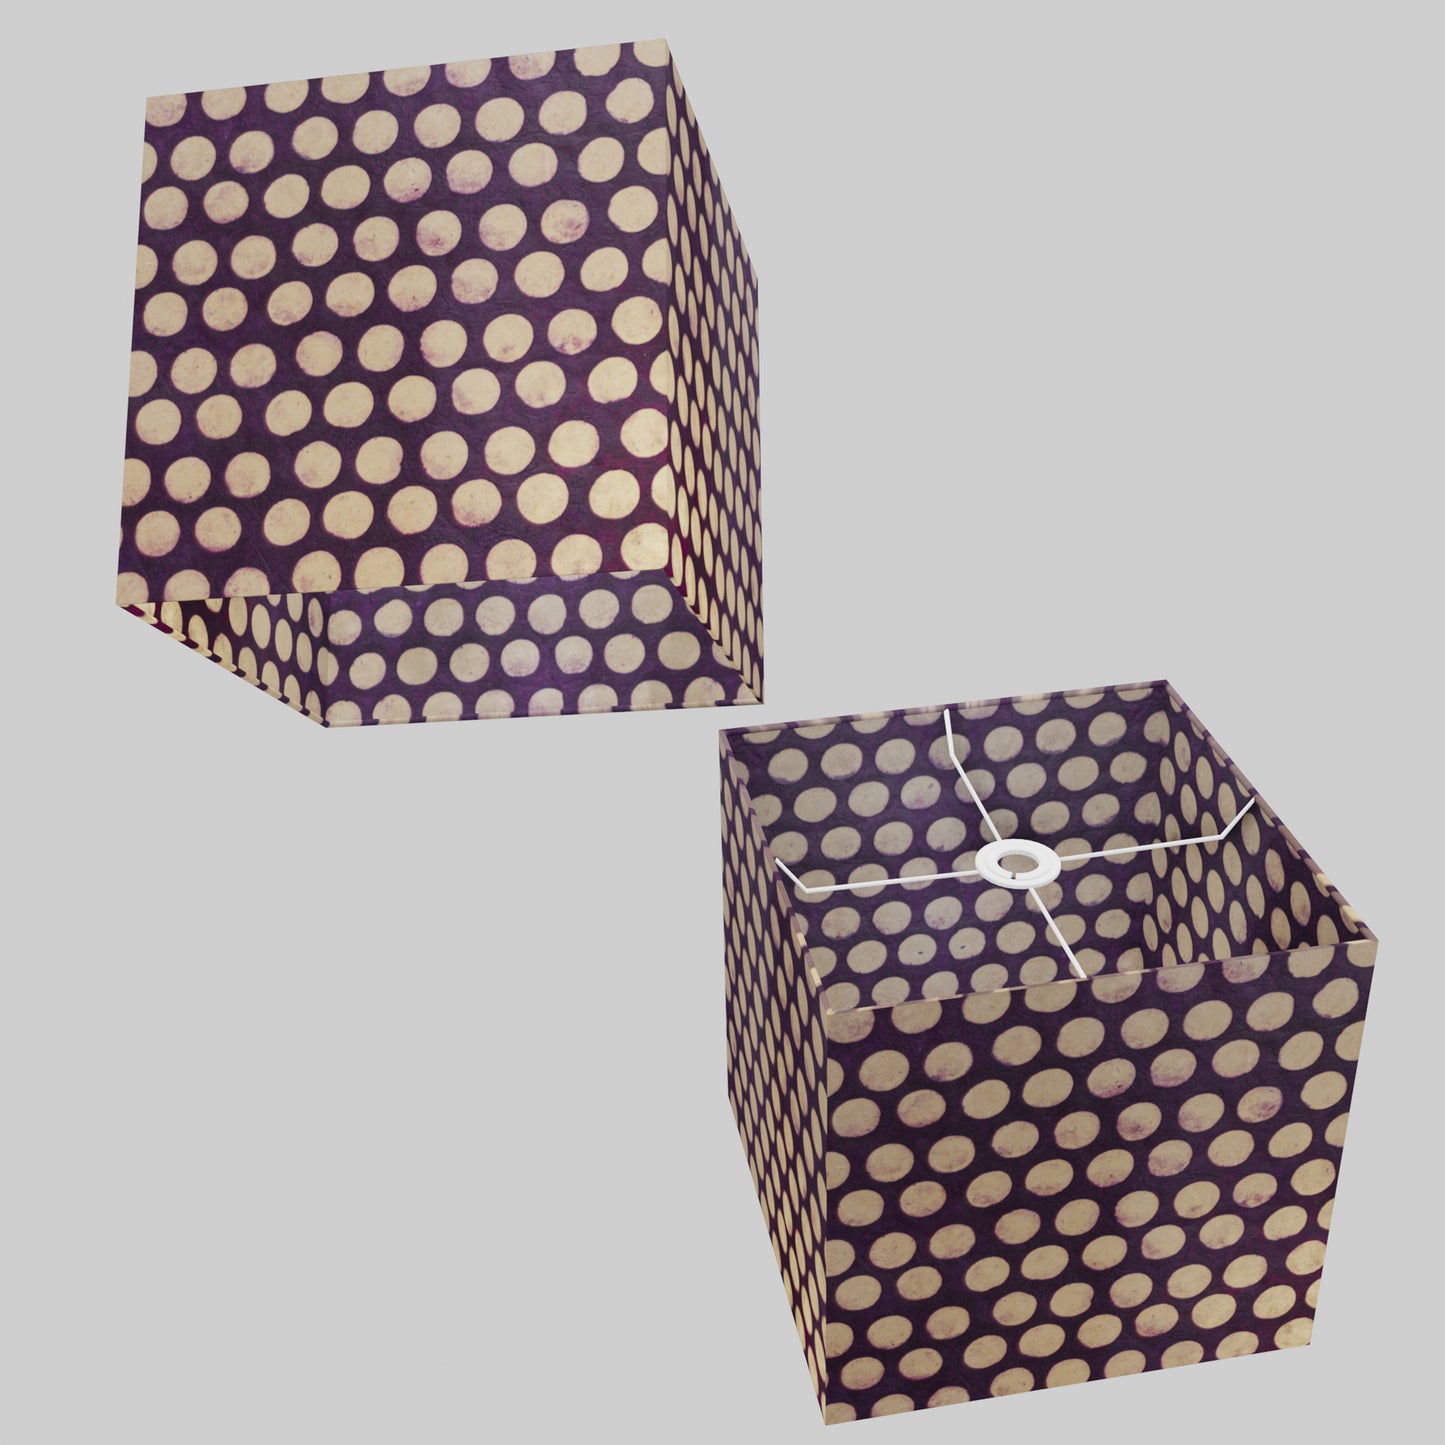 Square Lamp Shade - P79 - Batik Dots Purple, 30cm(w) x 30cm(h) x 30cm(d)